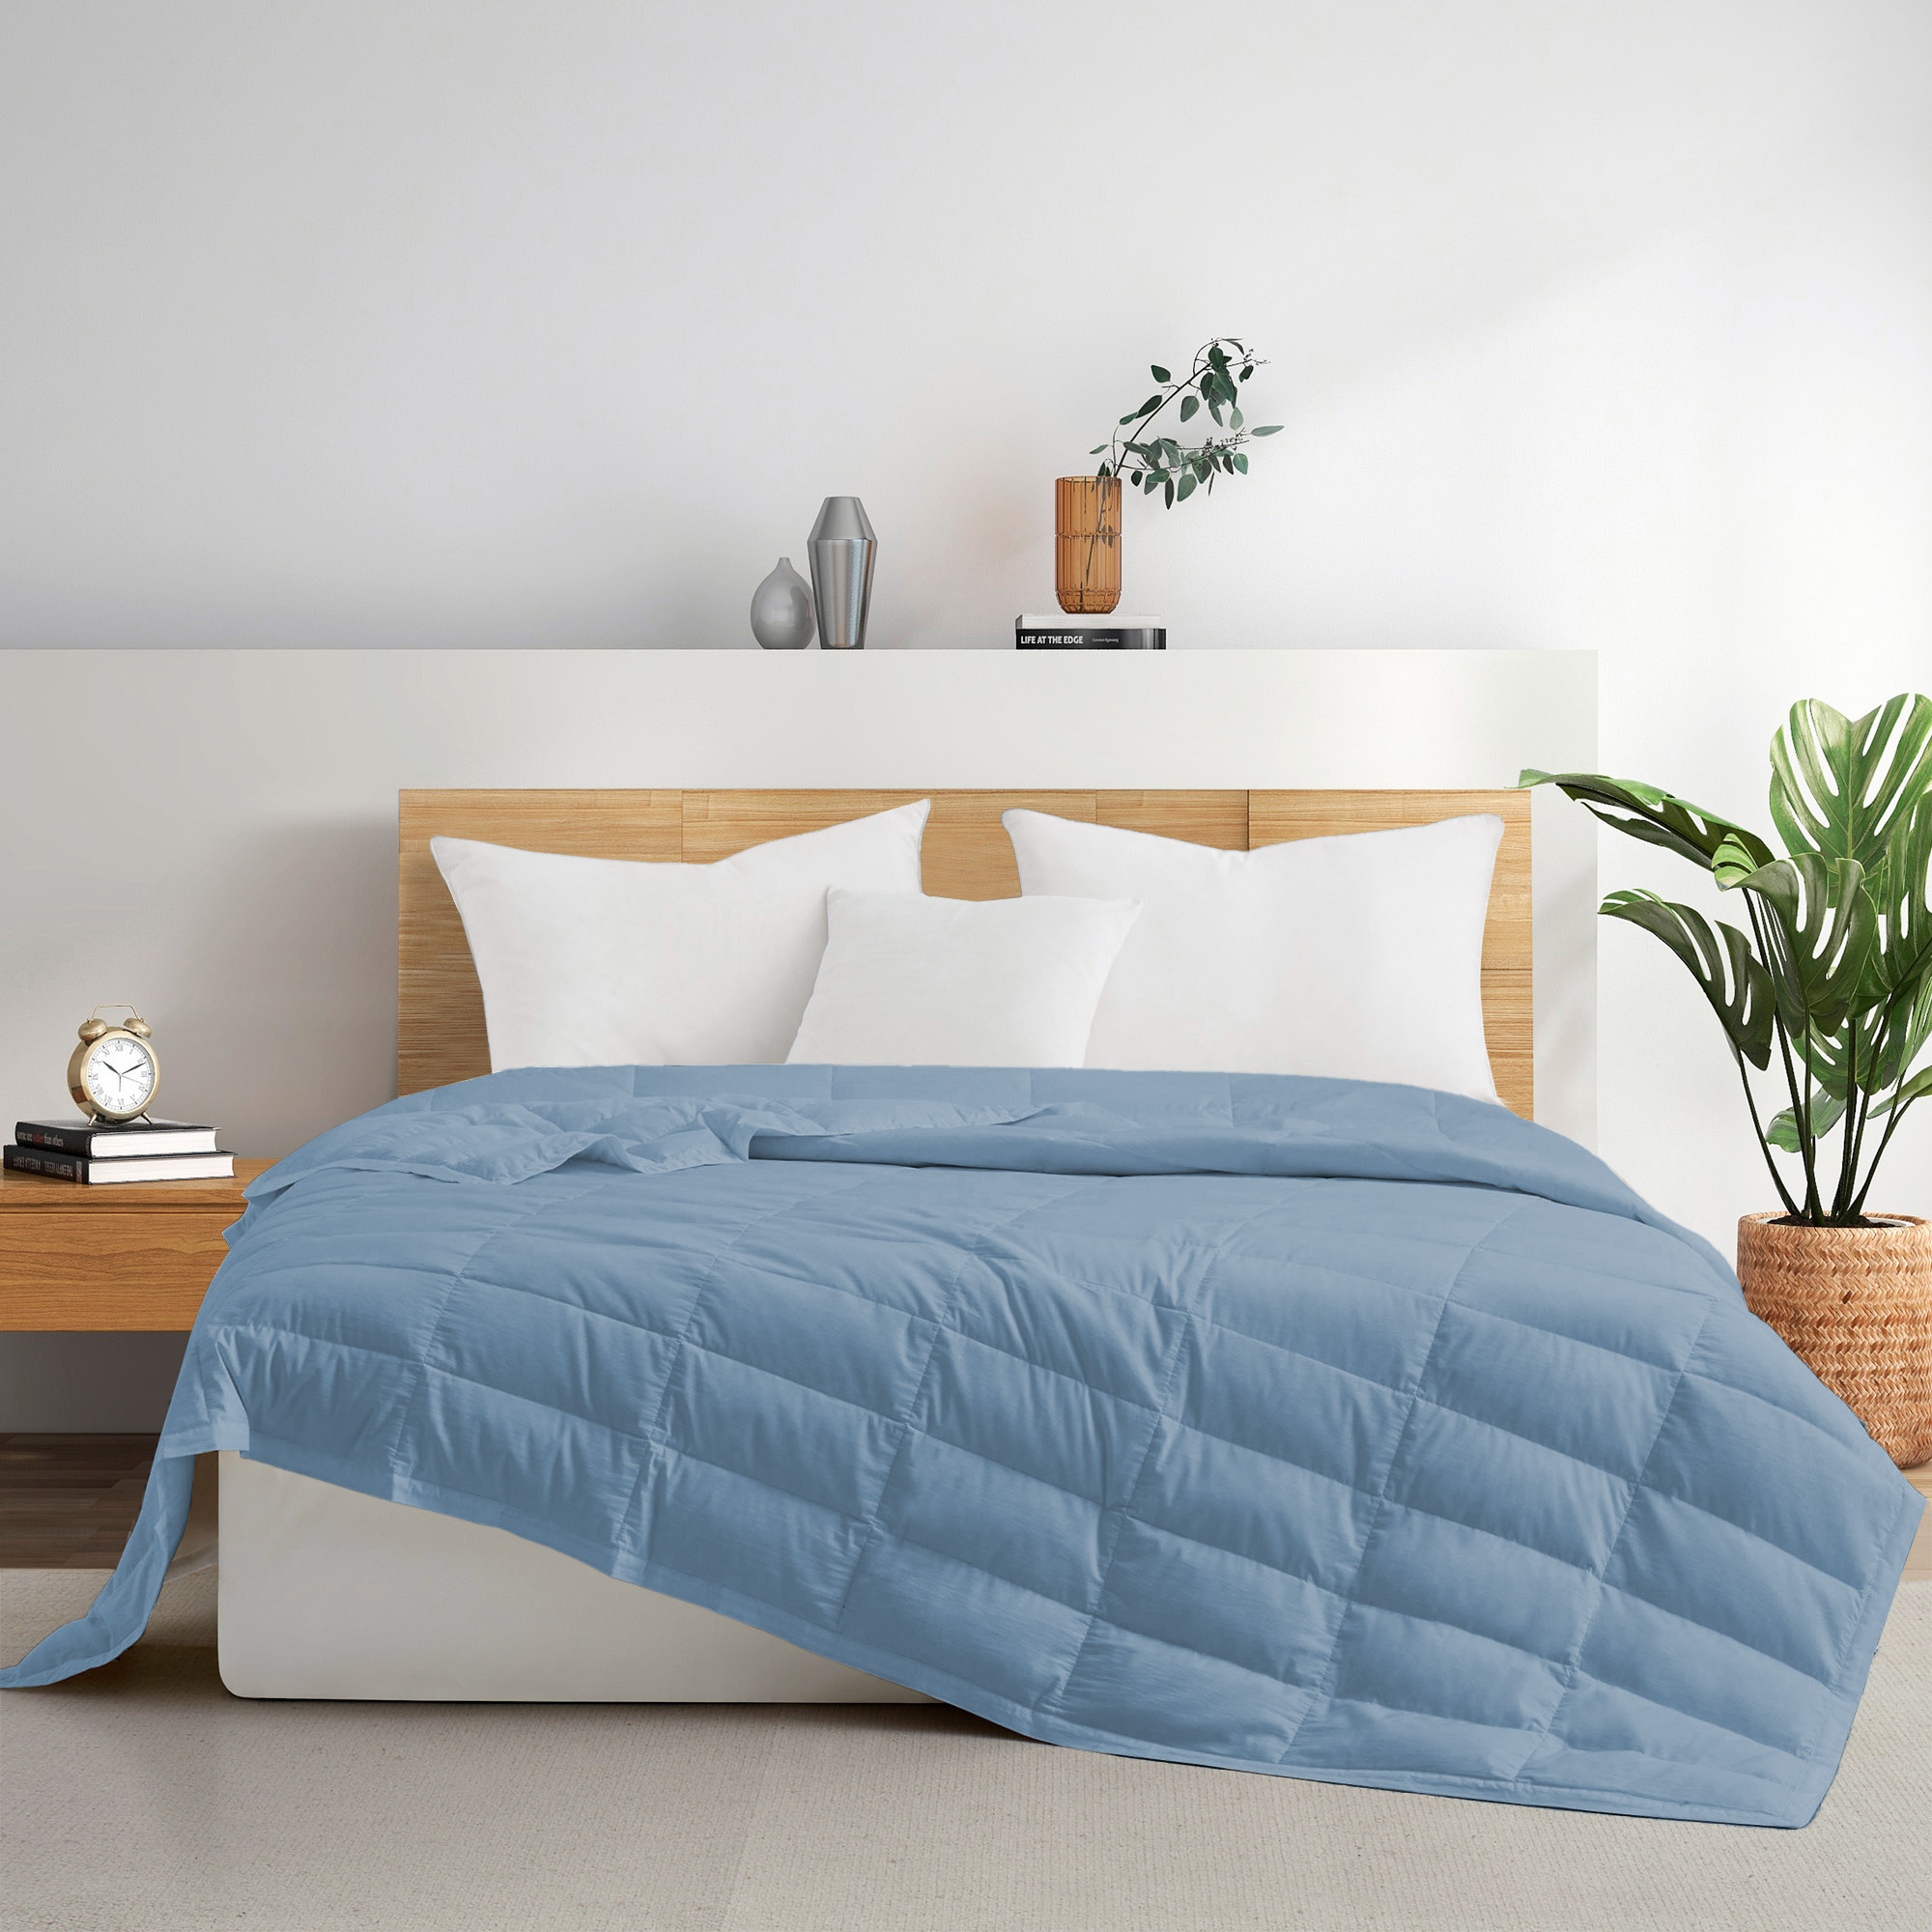 TENCELâ¢ Lyocell Lightweight Cooling Down Blanket-Luxurious Comfort Summer Blanket - Navy Blue, King